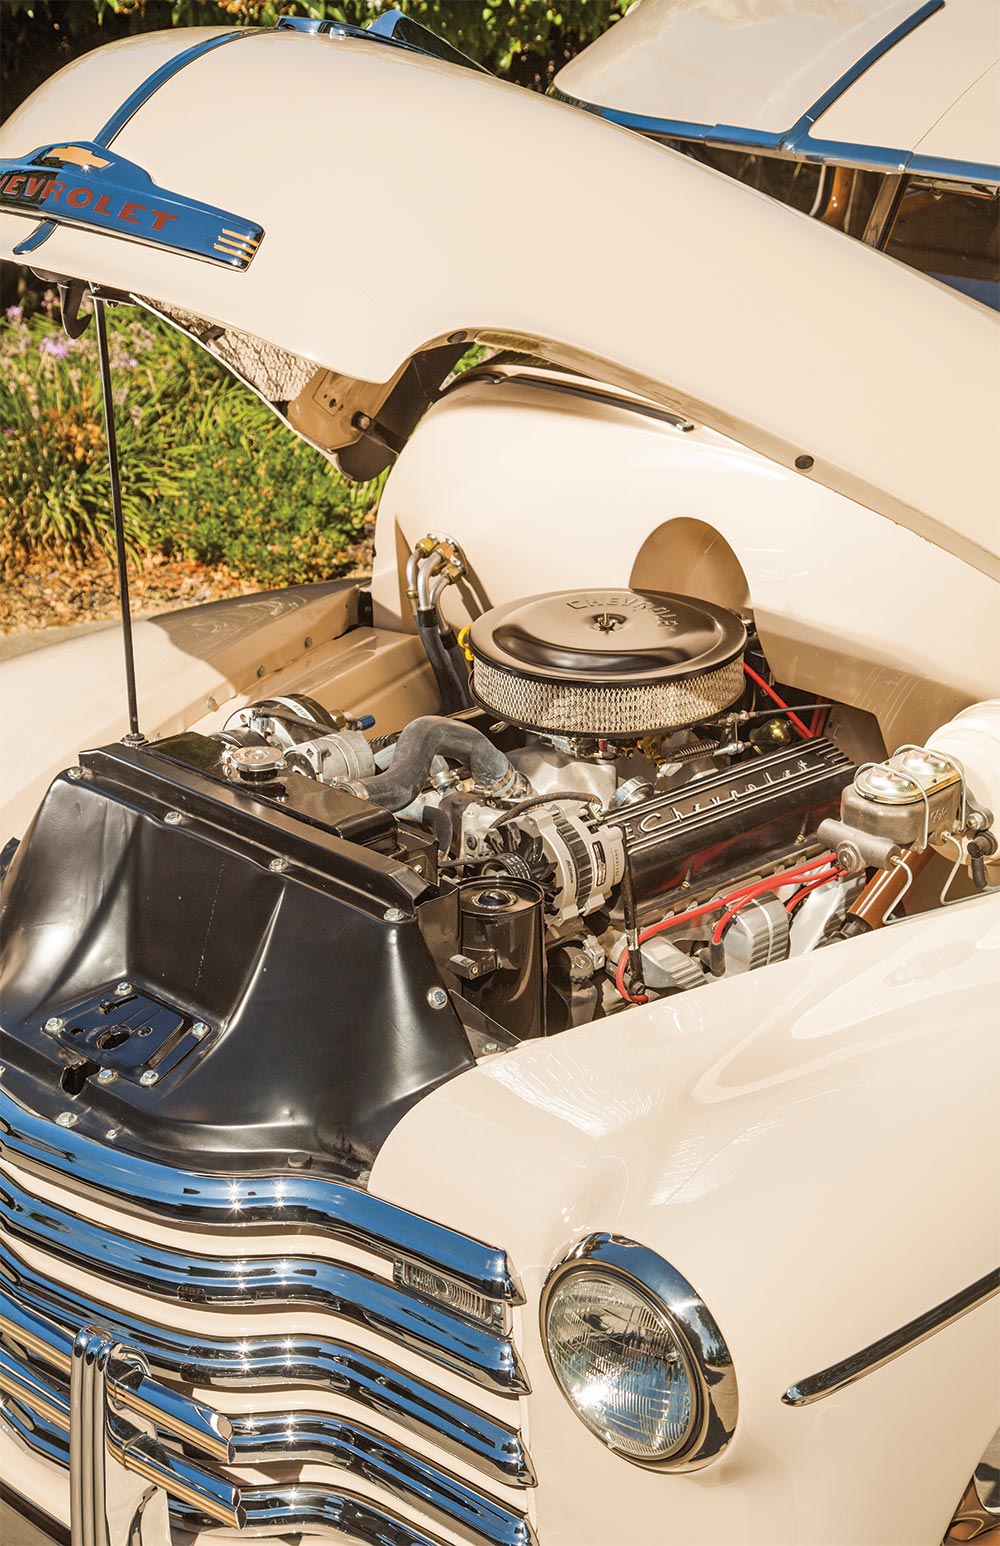 Robert Gallery’s 1949 Chevy Suburban engine